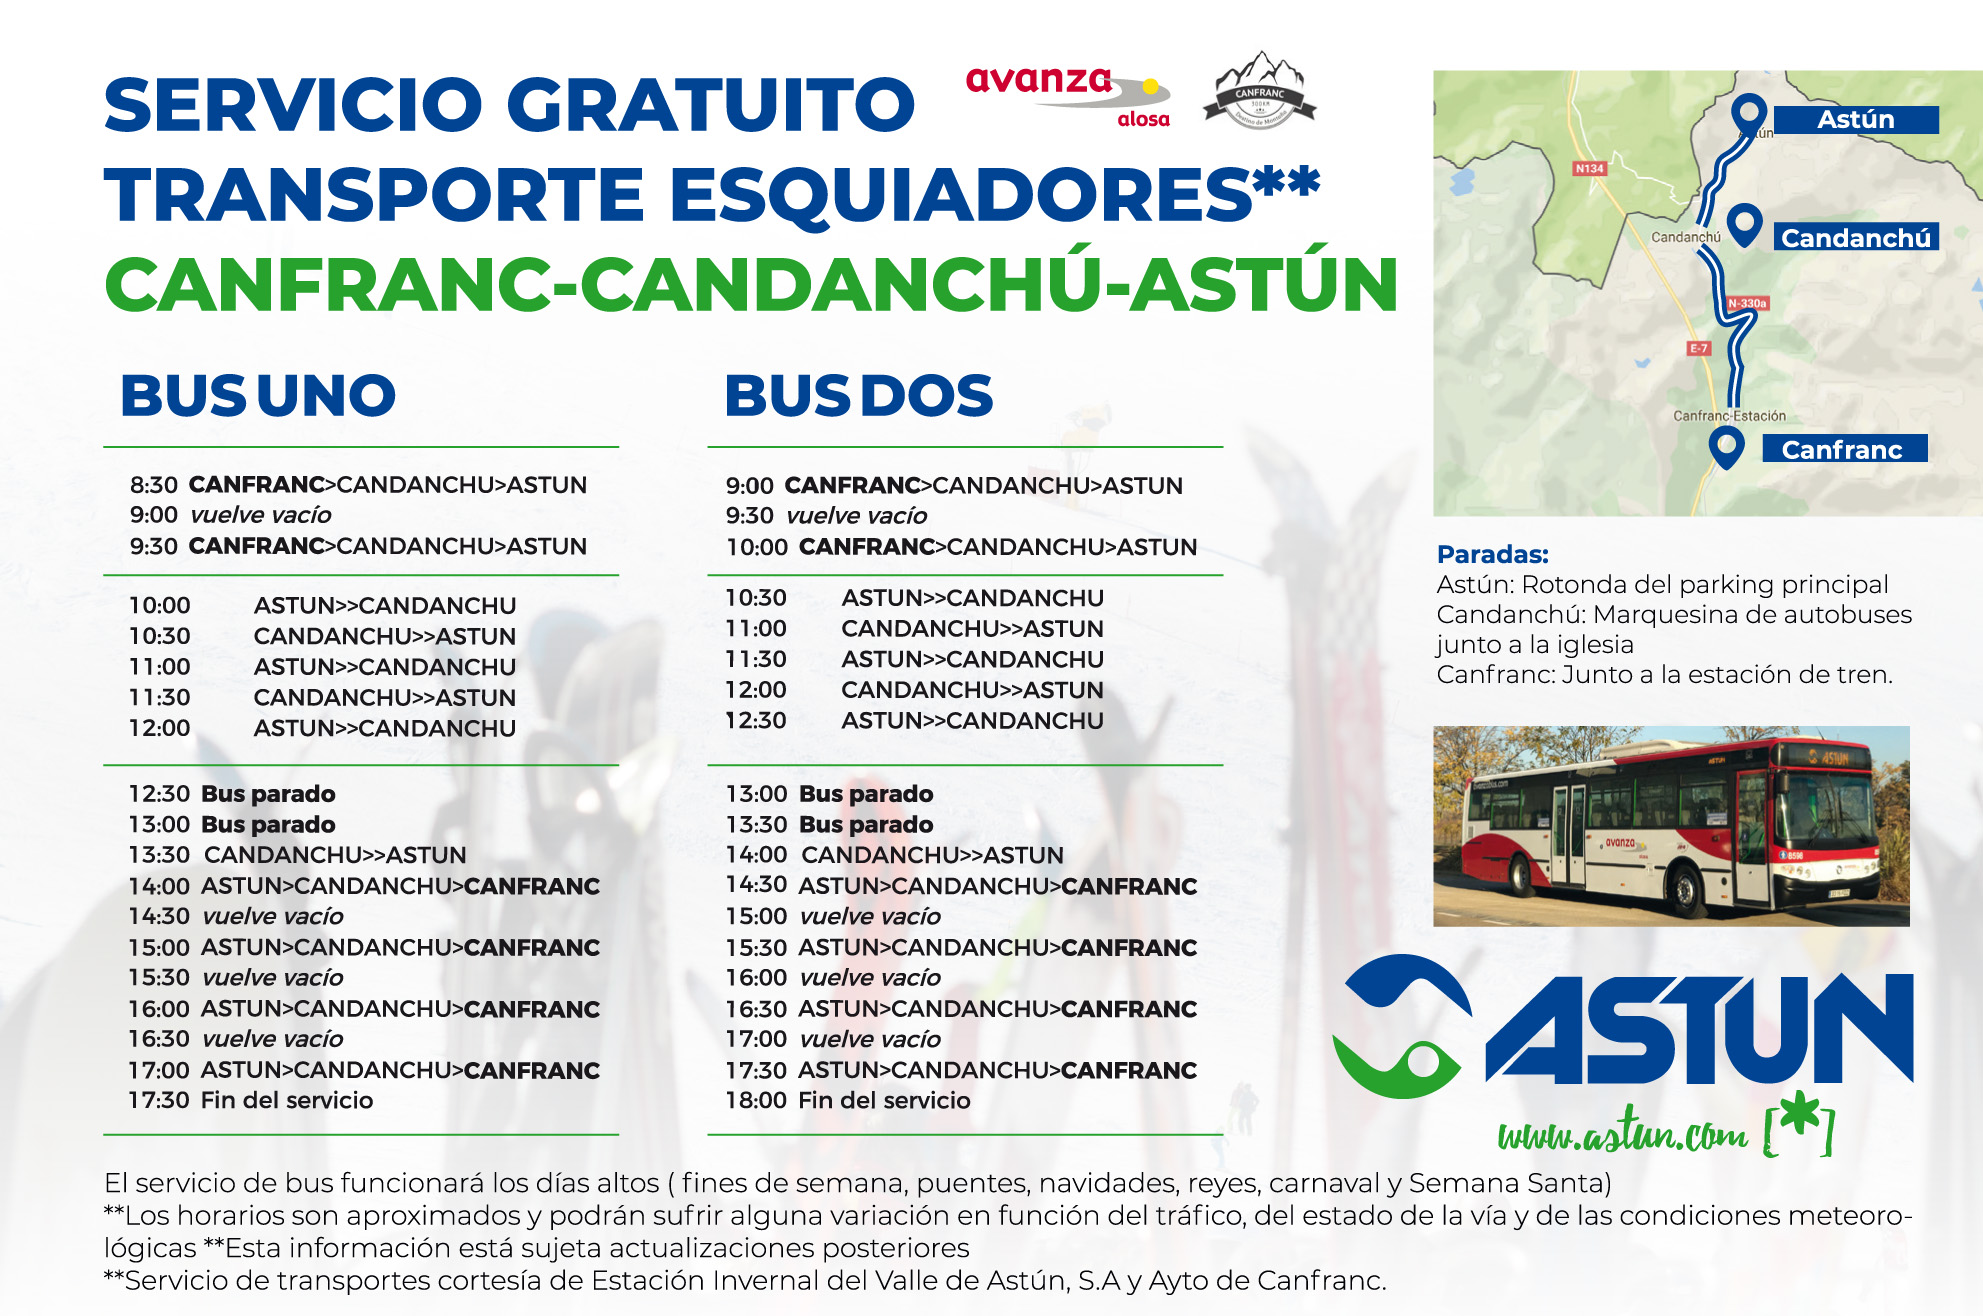 Servicio de autobuses gratuitos Canfranc-Candanchú-Astún durante fines de semana y periodos vacacionales; se adjunta cartel informativo.